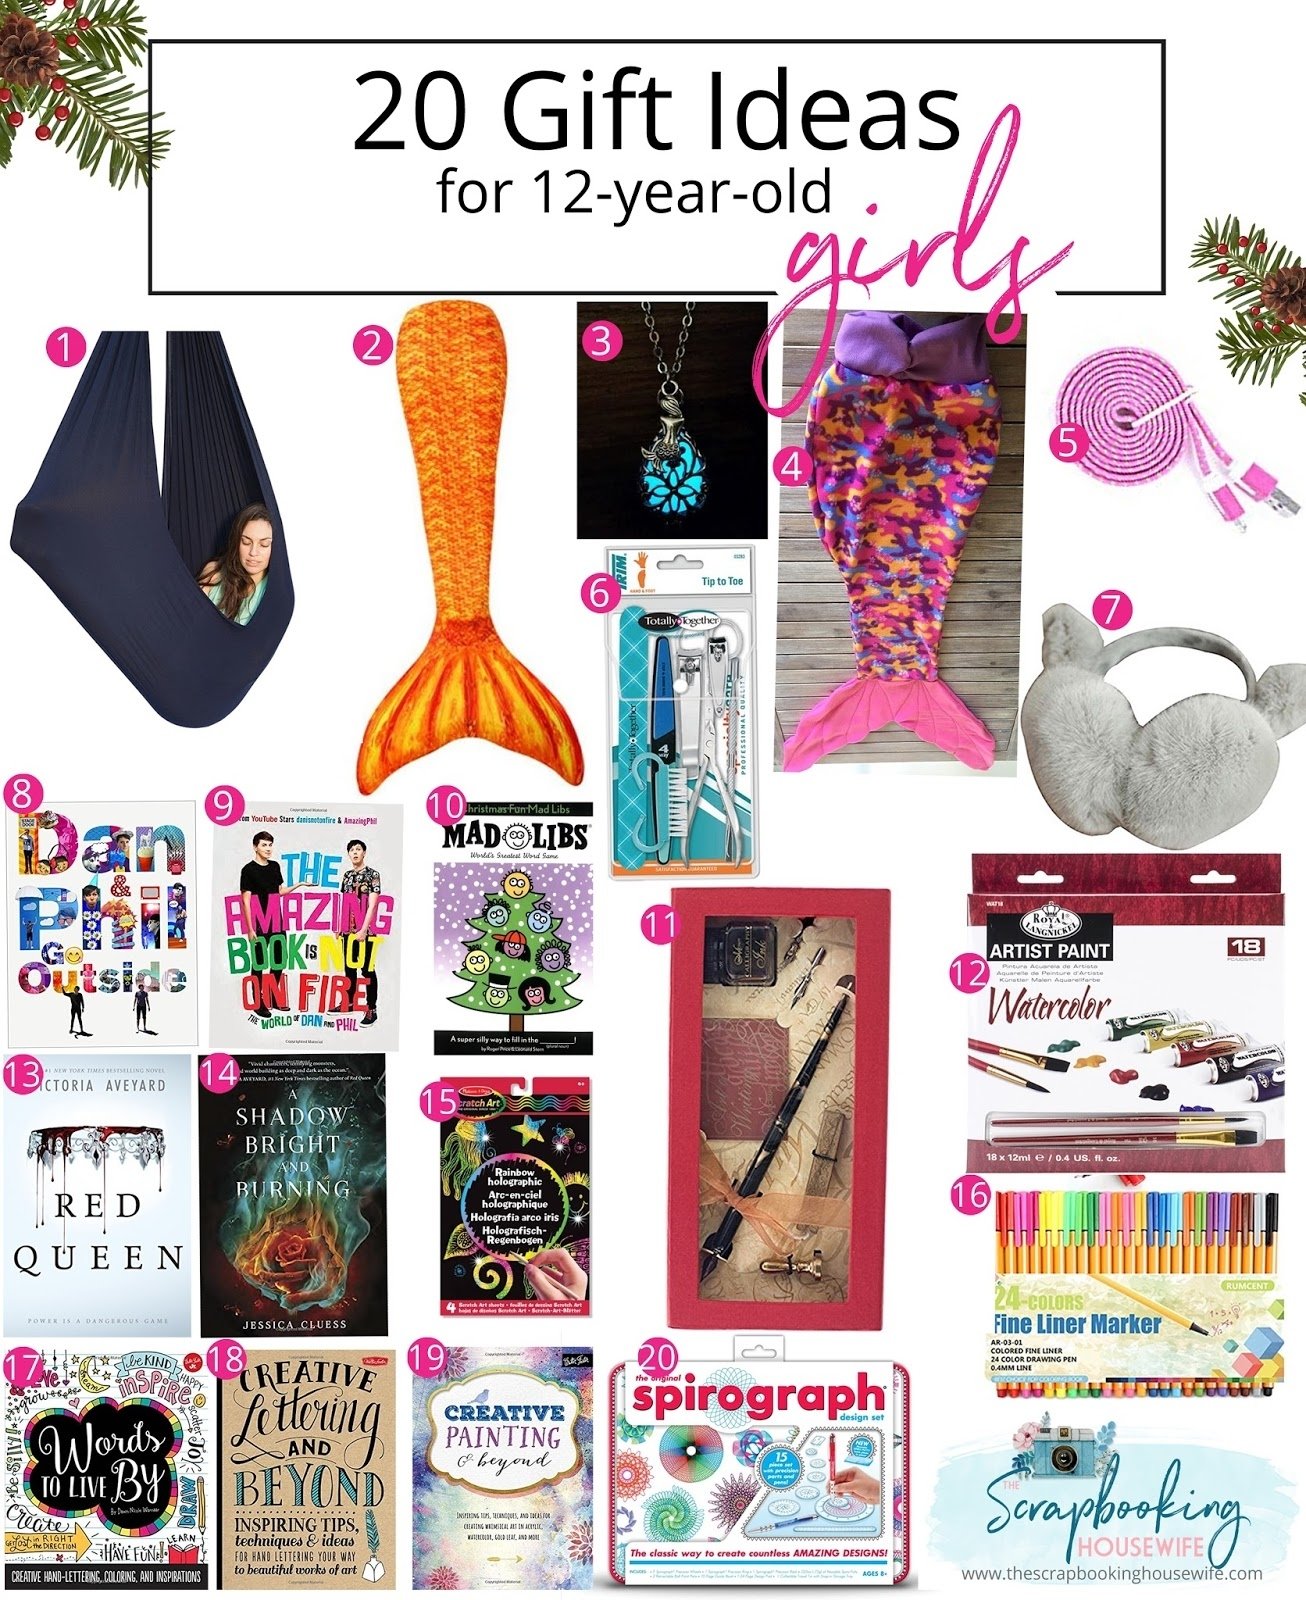 10 Unique Gift Ideas For Tween Girl ellabella designs 20 gift ideas for 12 year old tween girls 18 2022